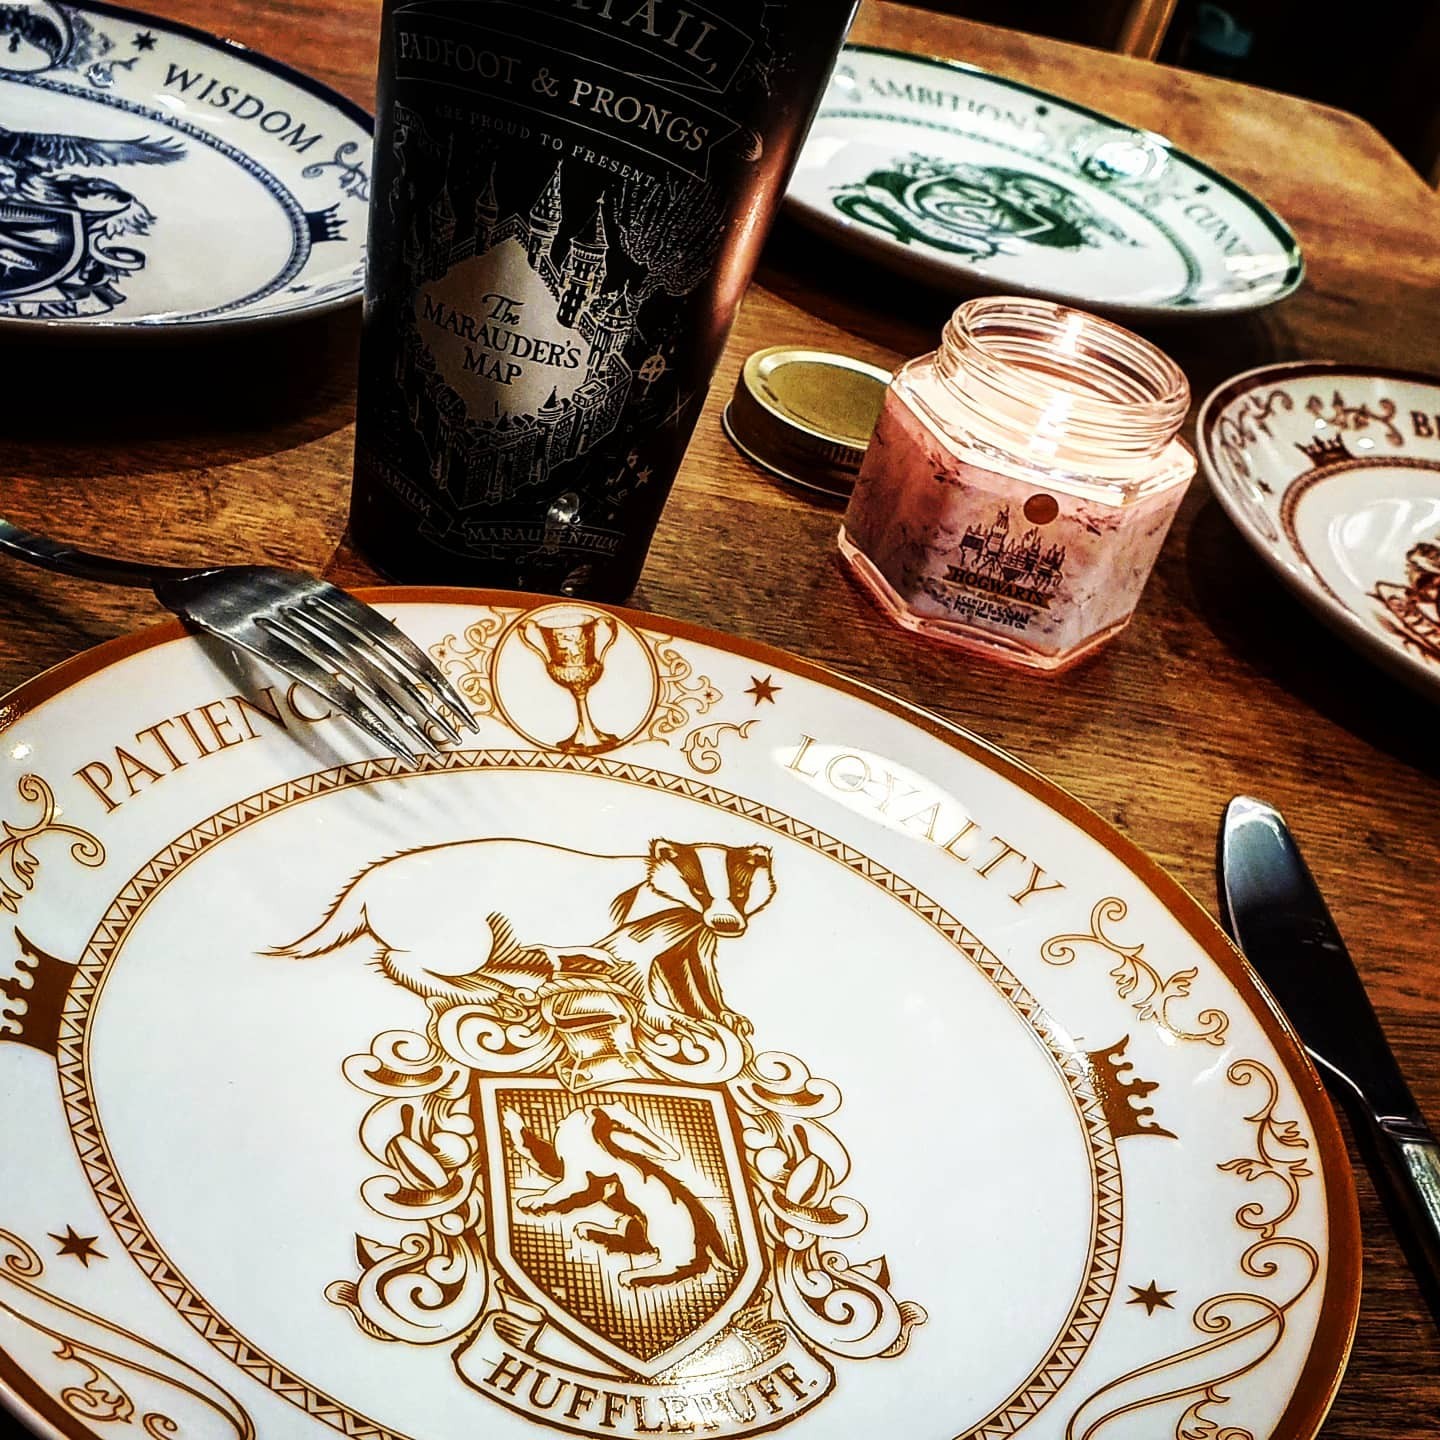 8 Petites assiettes en carton motifs Harry Potter™ 18 cm - Vegaooparty